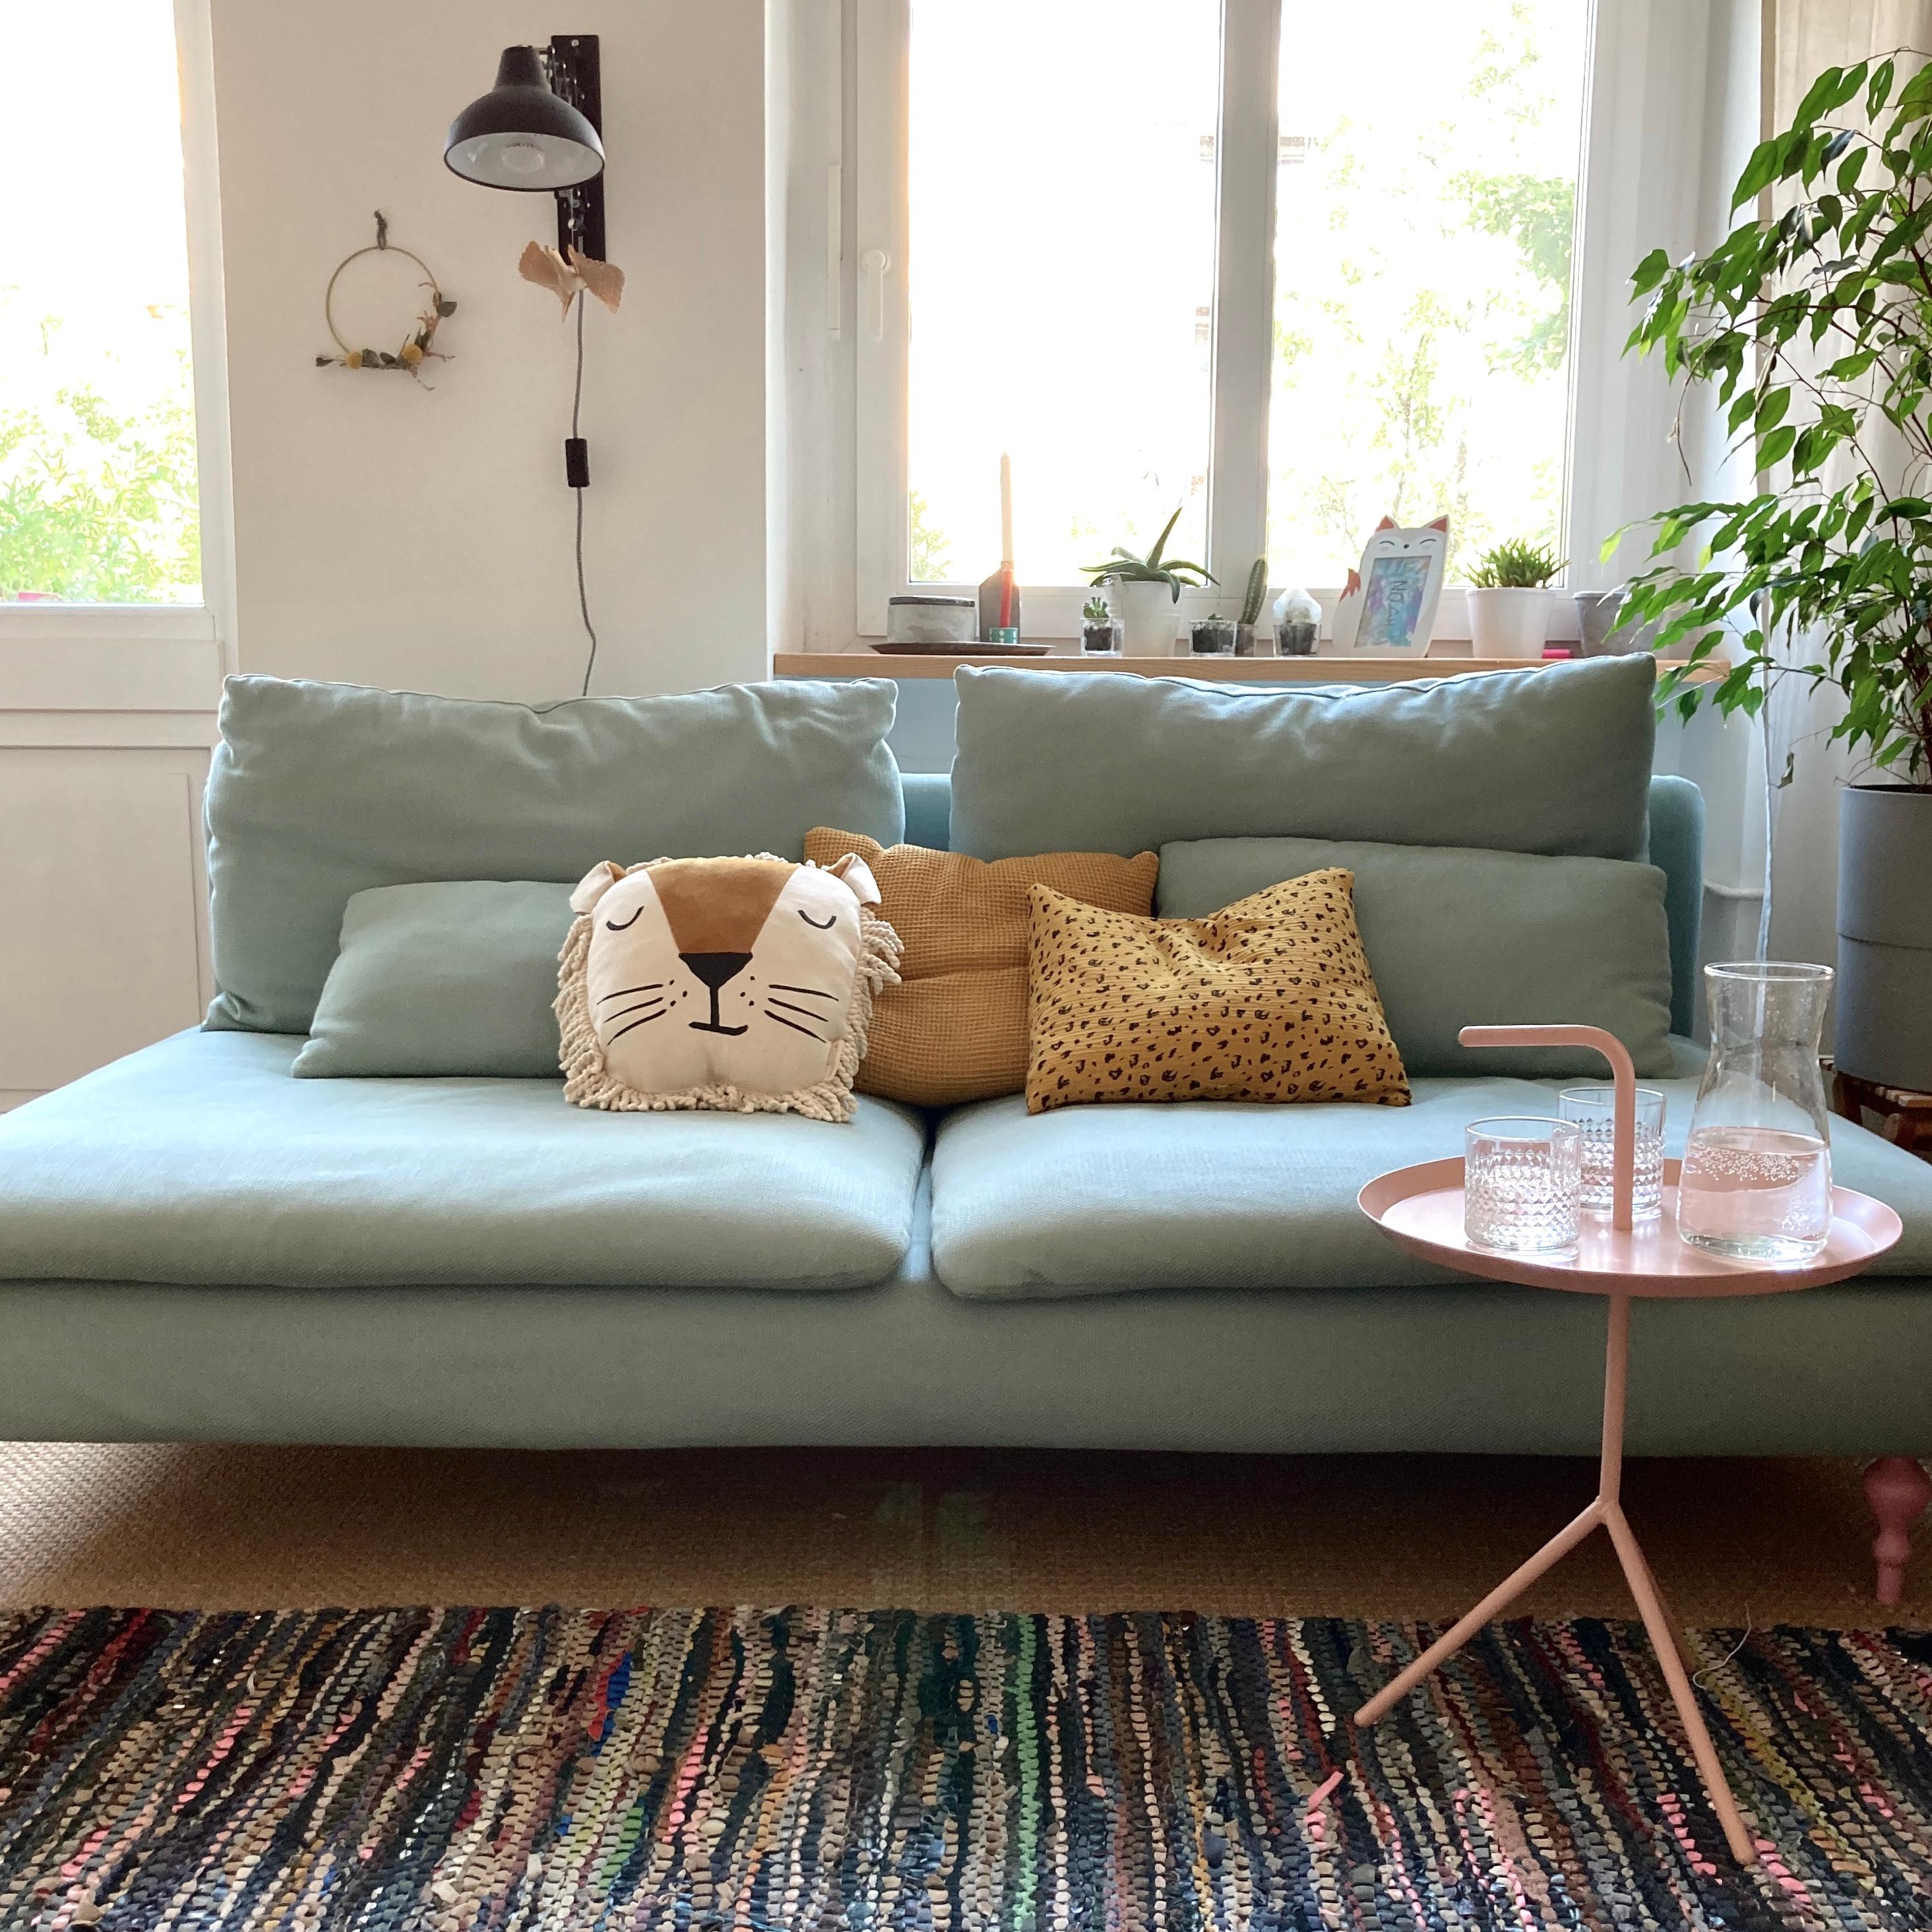 Zu meinem Lieblingsort hat sich ein Löwe gesellt 😱🦁😍
#couch #sofa #löwe #cozy #livingroom #schlafzimmer